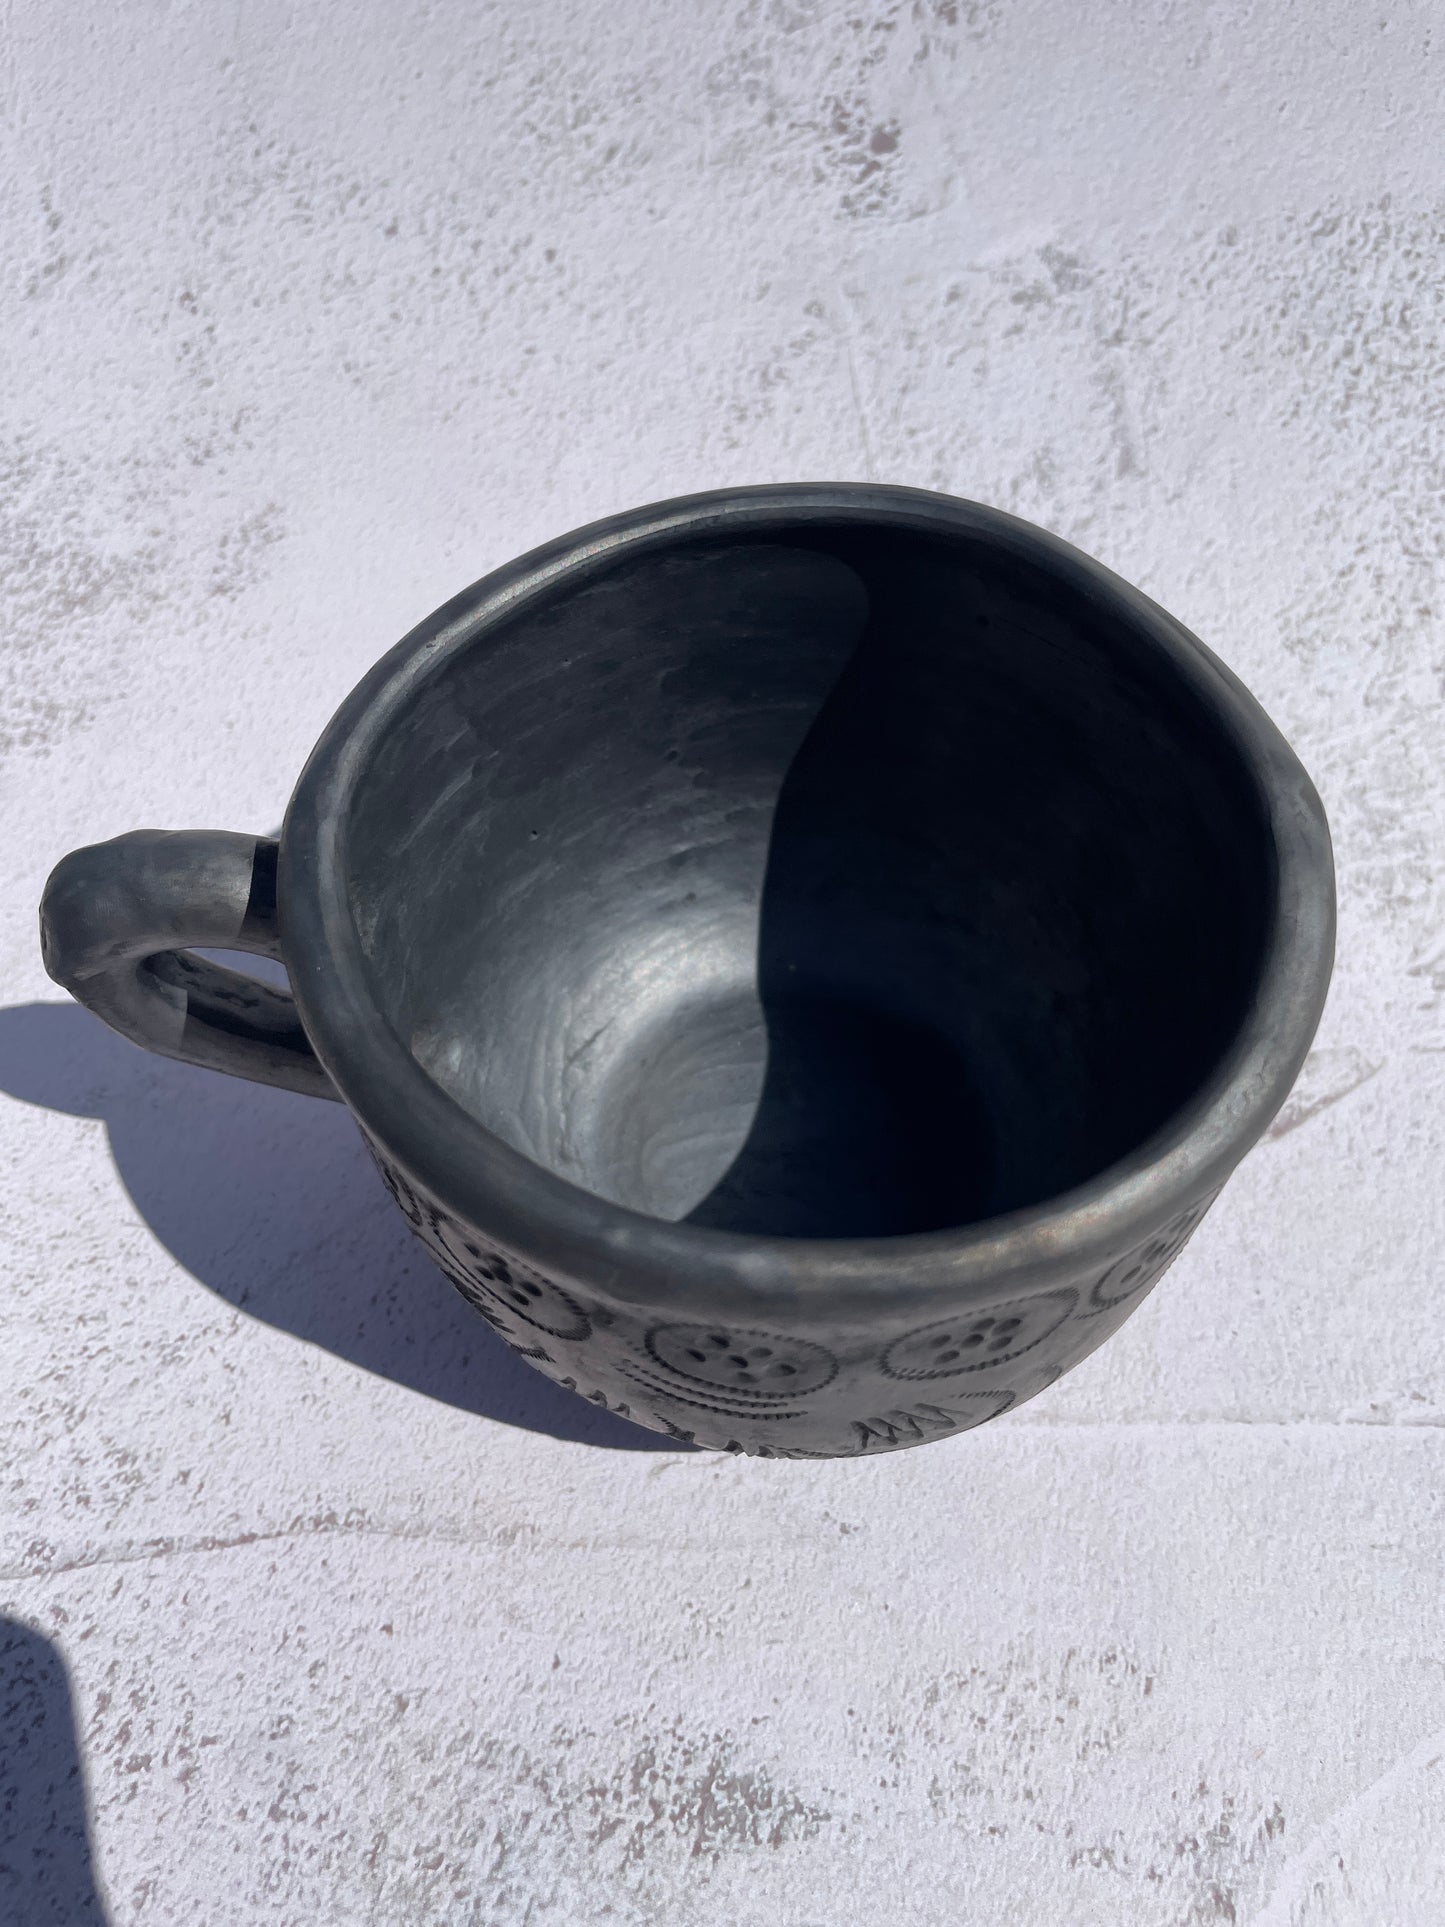 Oaxaca Black Pottery Mugs Taza Barro Negro